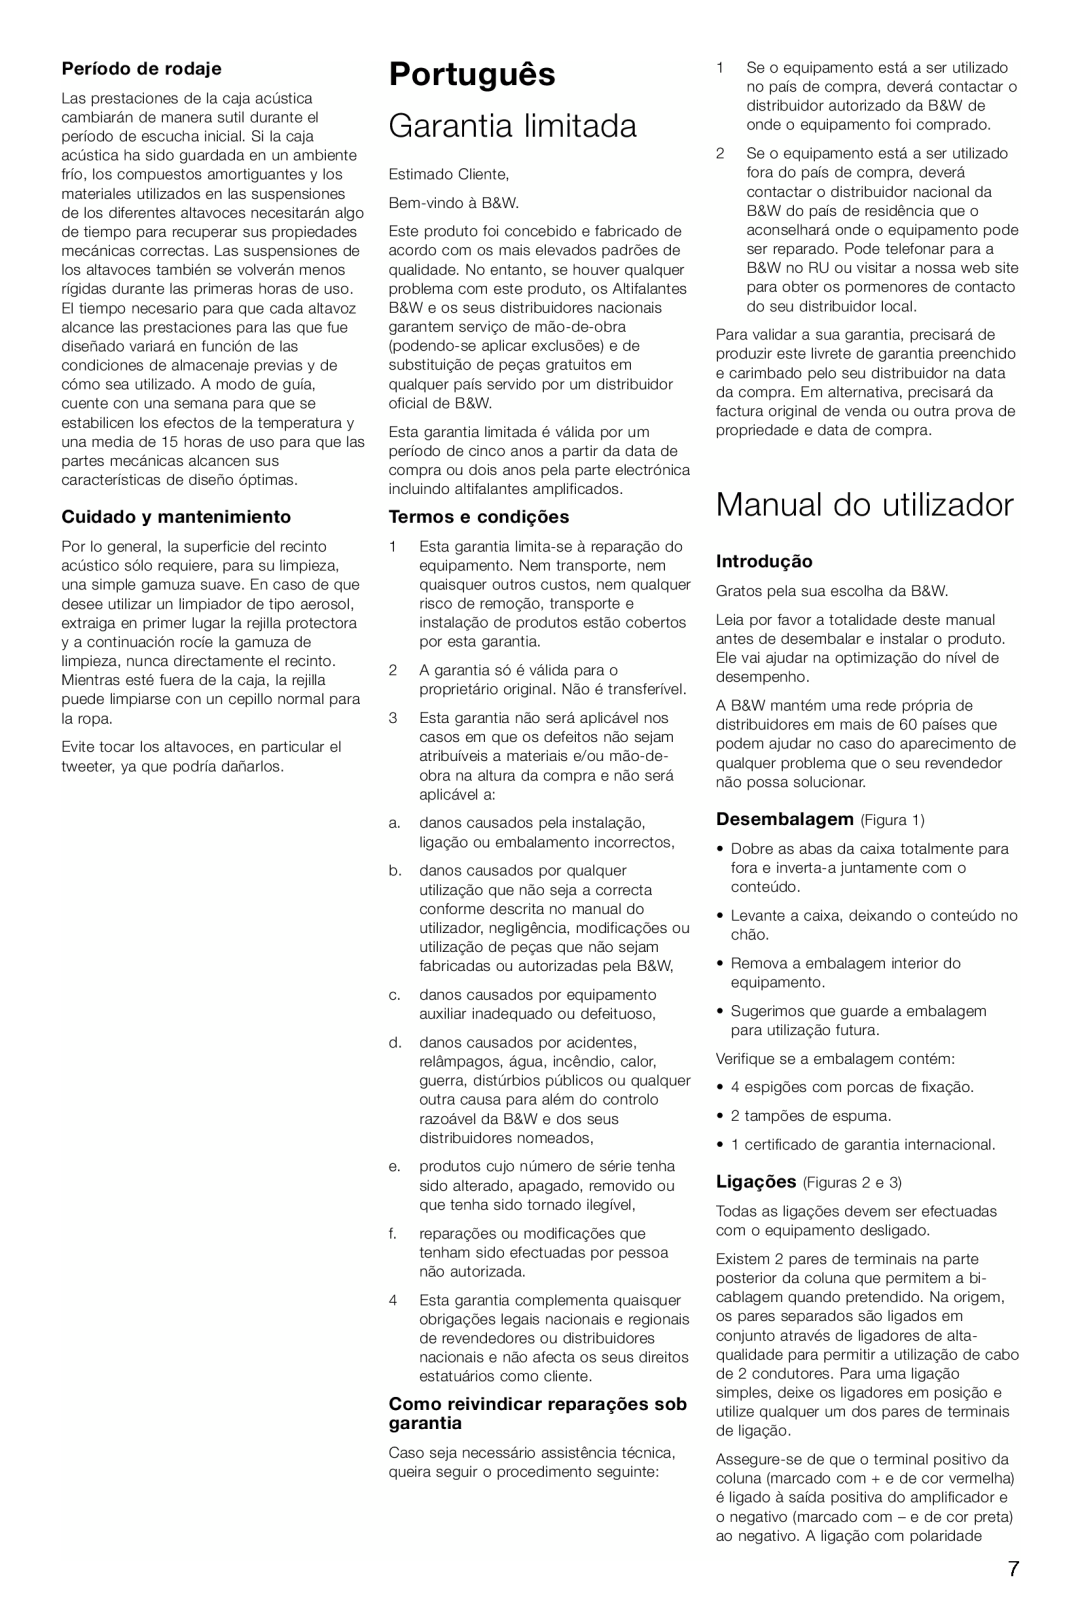 Bowers & Wilkins CM6, CM4 Português, Garantia limitada, Manual do utilizador, Período de rodaje, Cuidado y mantenimiento 